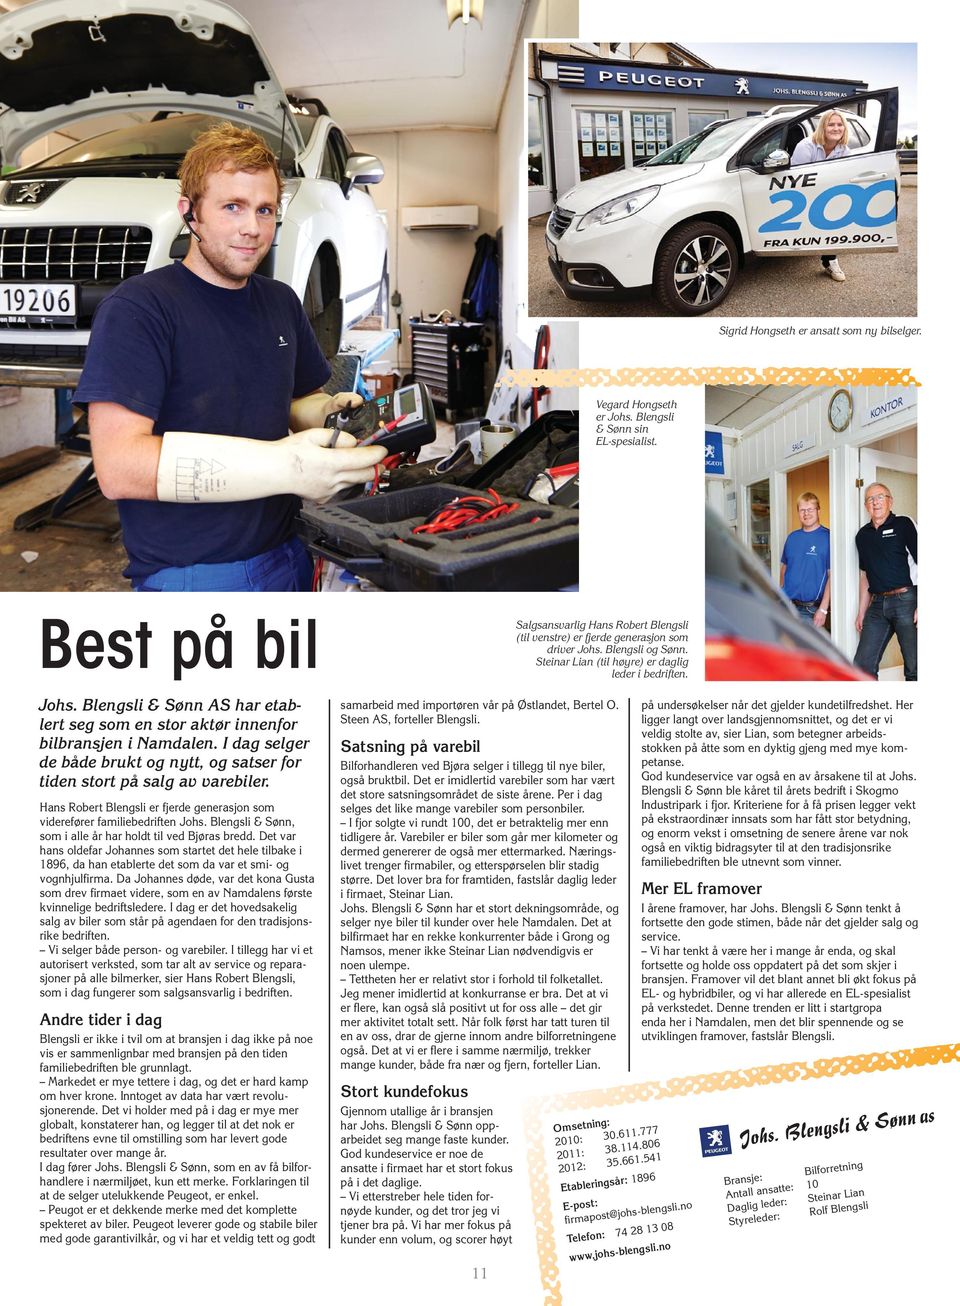 Hans Robert Blengsli er fjerde generasjon som viderefører familiebedriften Johs. Blengsli & Sønn, som i alle år har holdt til ved Bjøras bredd.